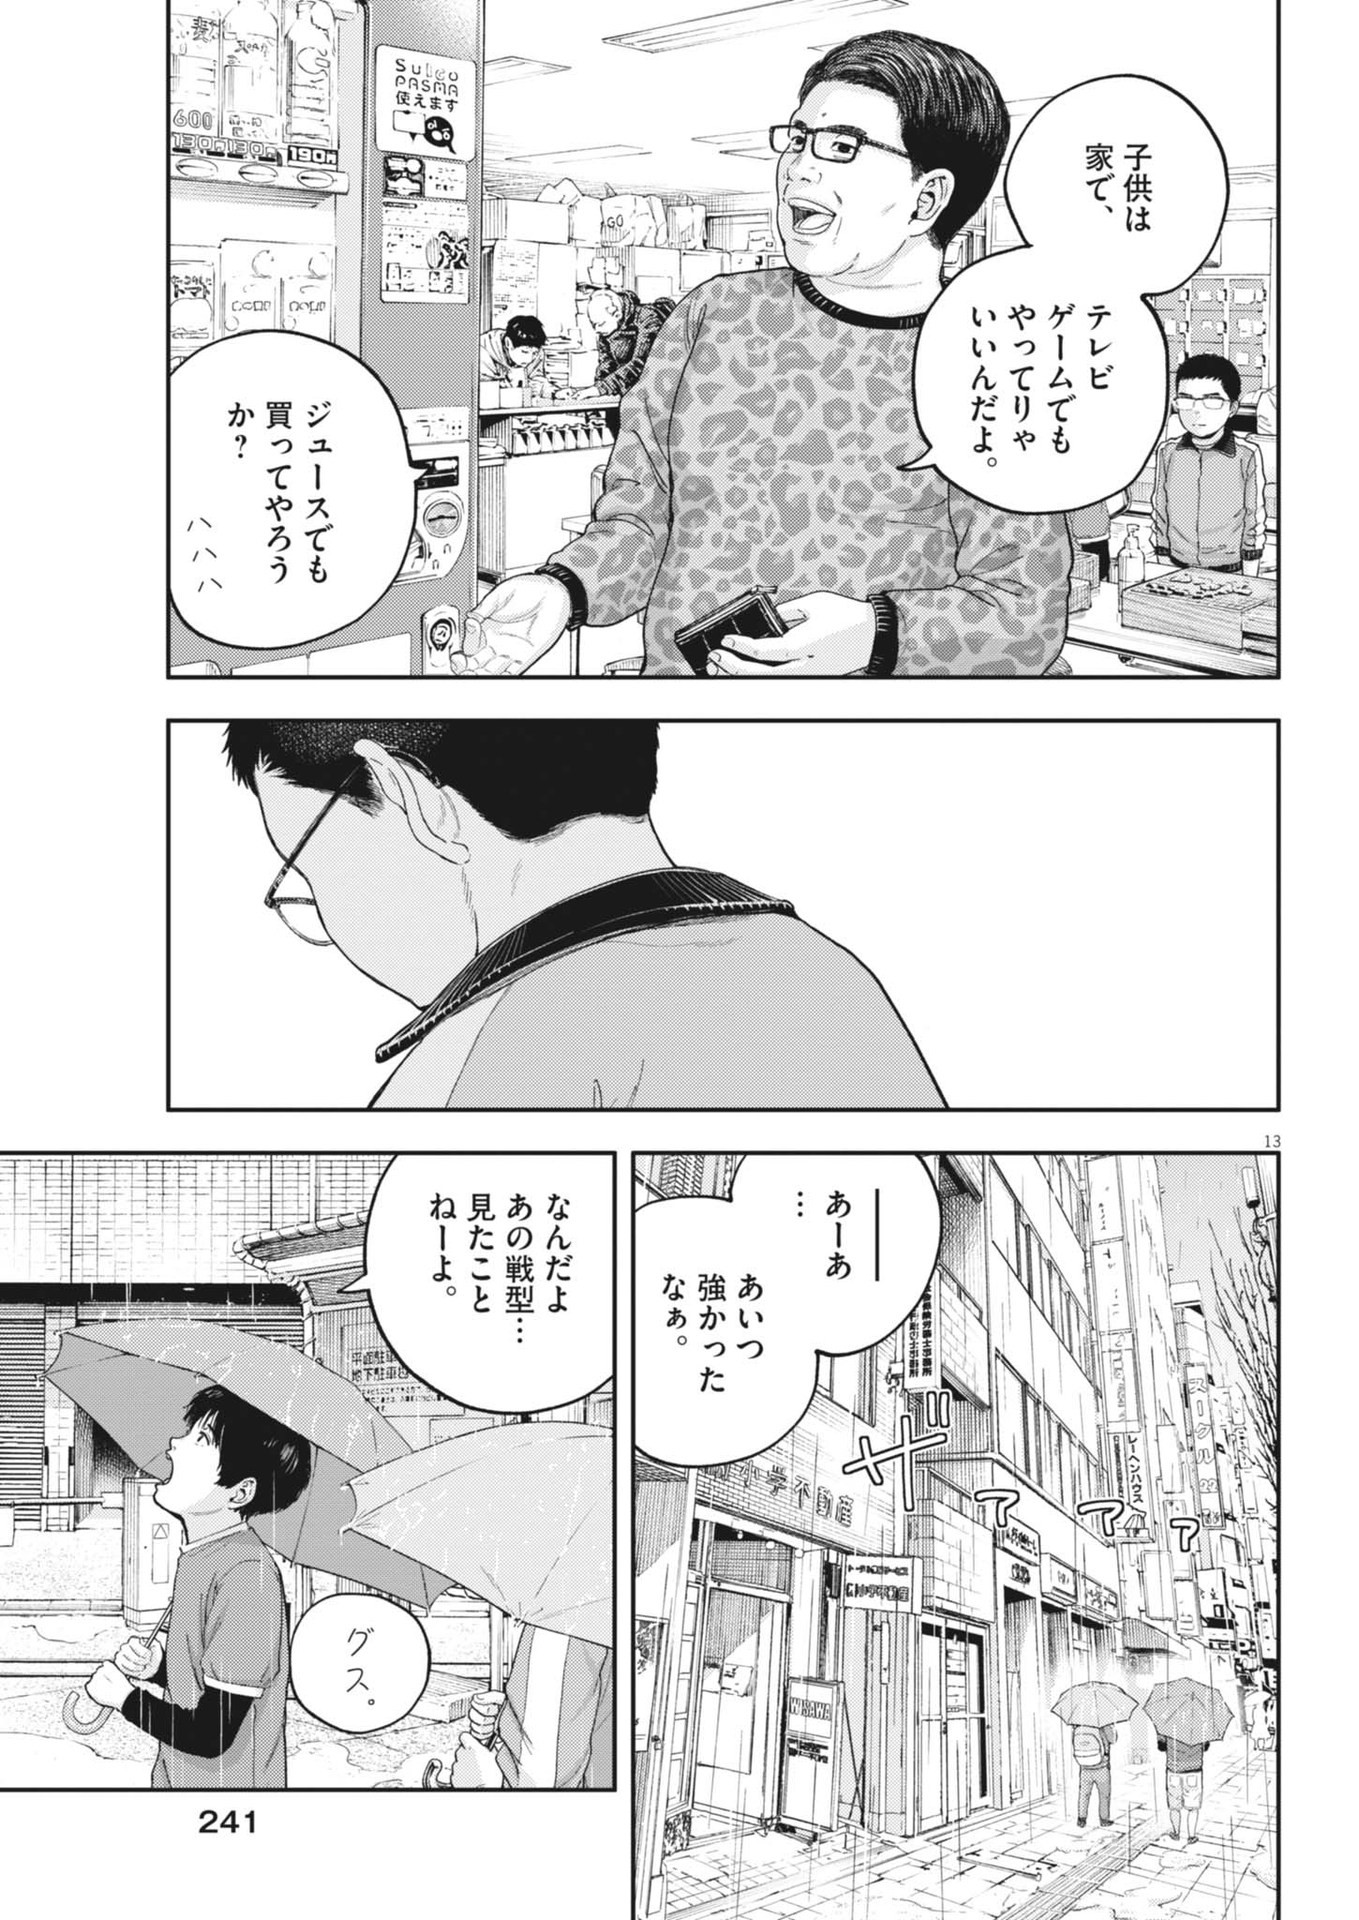 Yumenashi-sensei no Shinroshidou - Chapter 27 - Page 13